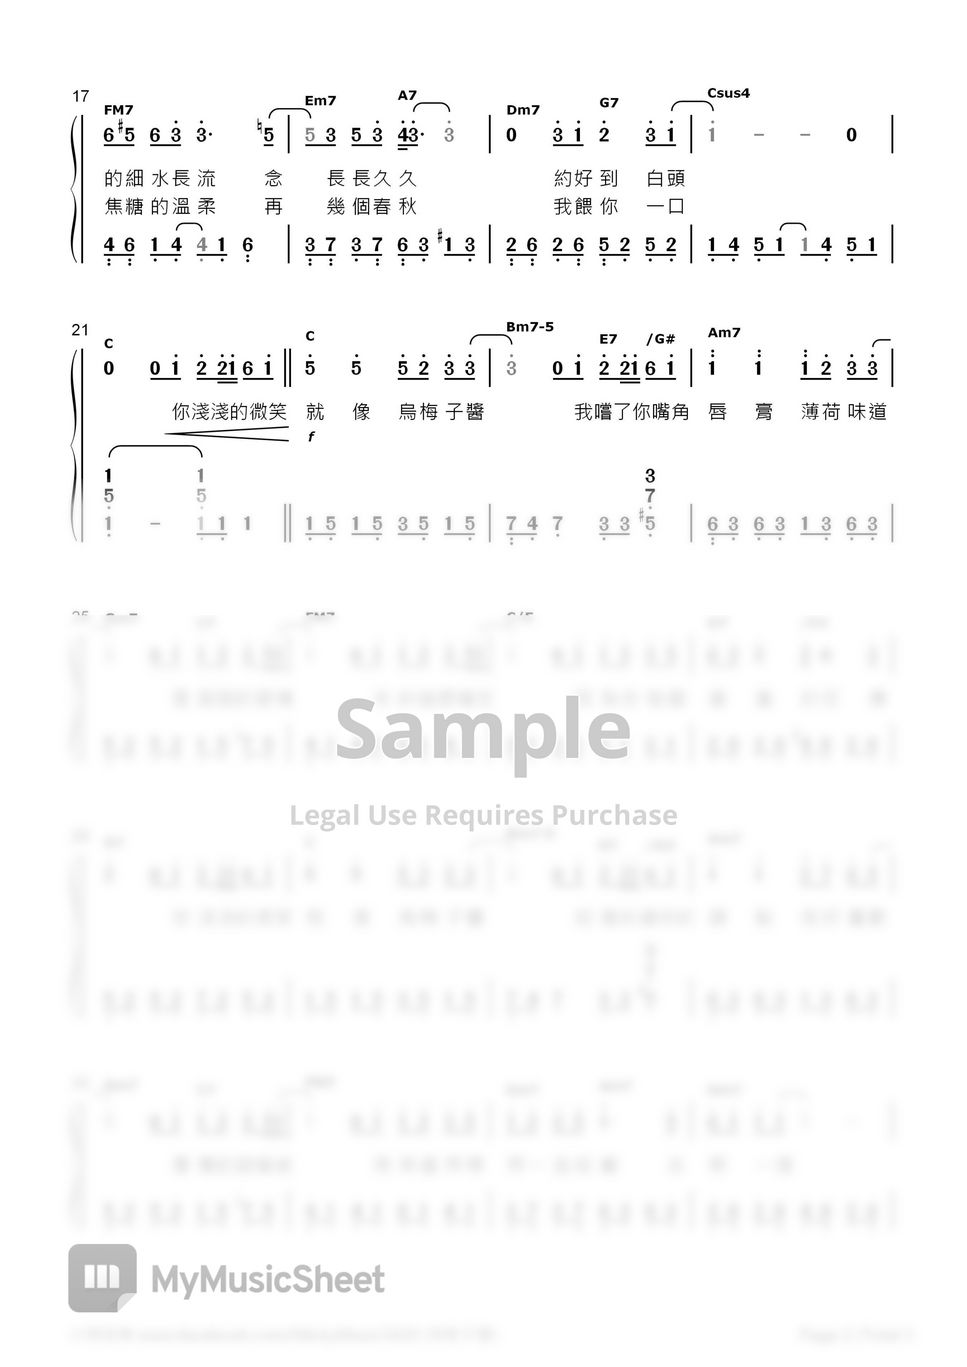 李榮浩(Ronghao Li) - The Dark Plum Sauce (Numbered Musical Notation)(C) by MickyMusic